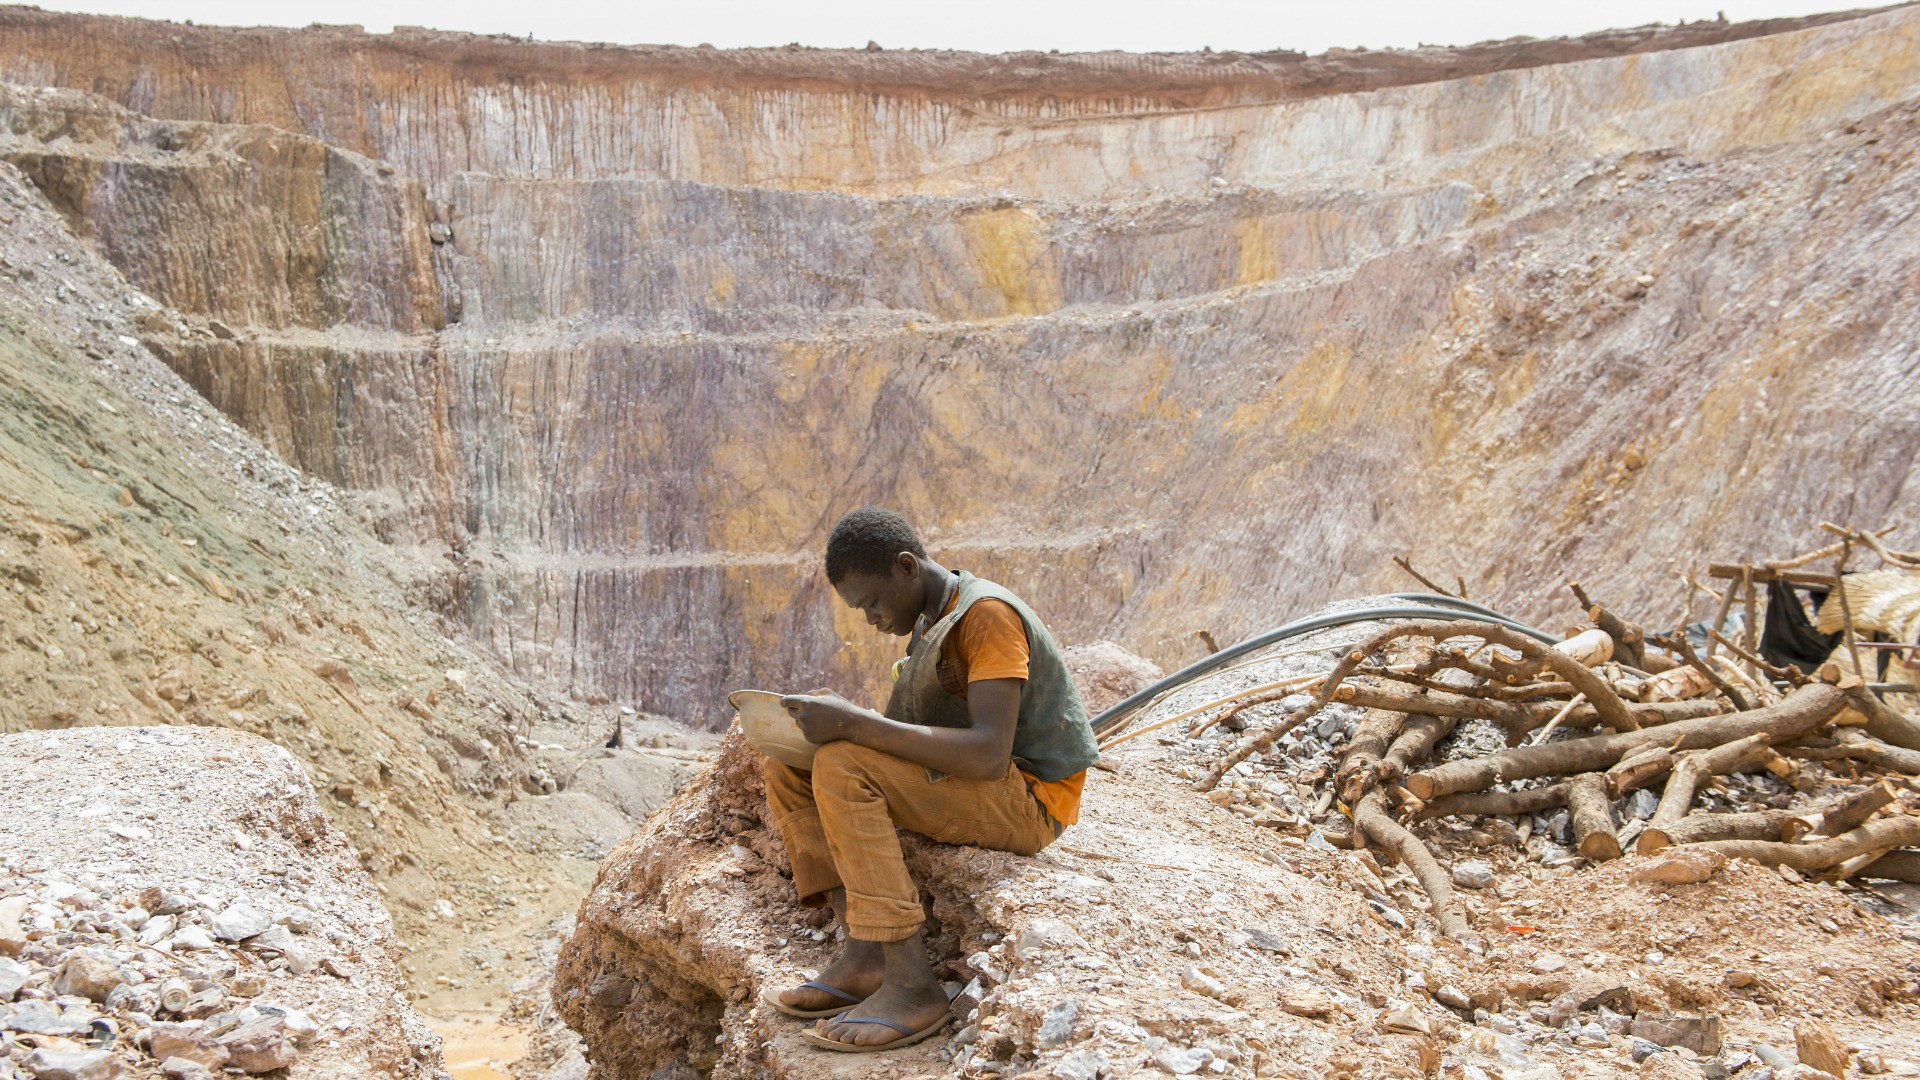 Au Burkina Faso, la mine d’or de Bakou a été abandonnée par une entreprise minière. Les petits creuseurs jouent leur vie pour trouver de l’or. (Photo: Meinrad Schade/Action de Carême)